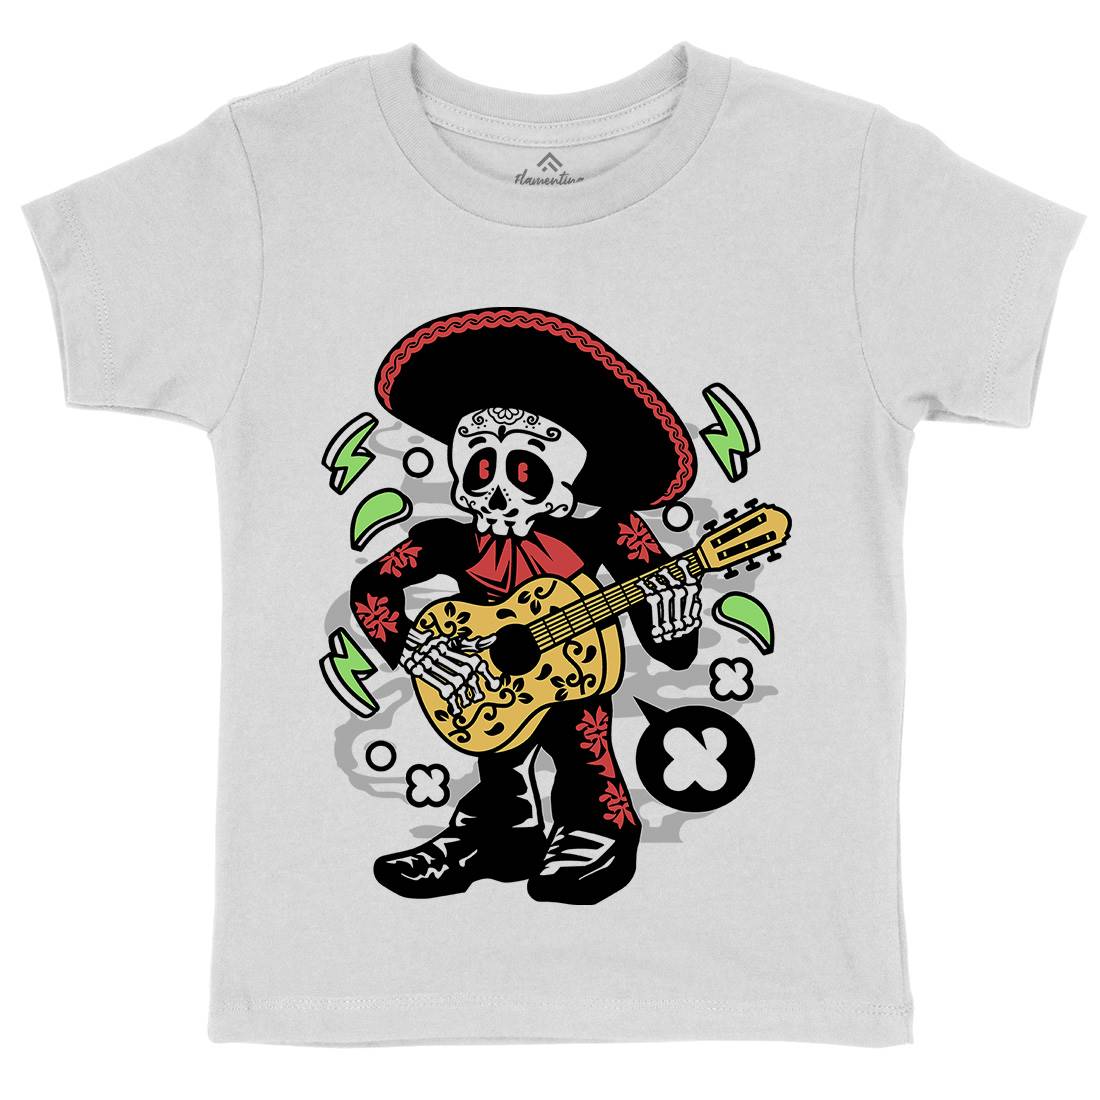 Mariachi Kids Crew Neck T-Shirt Music C168